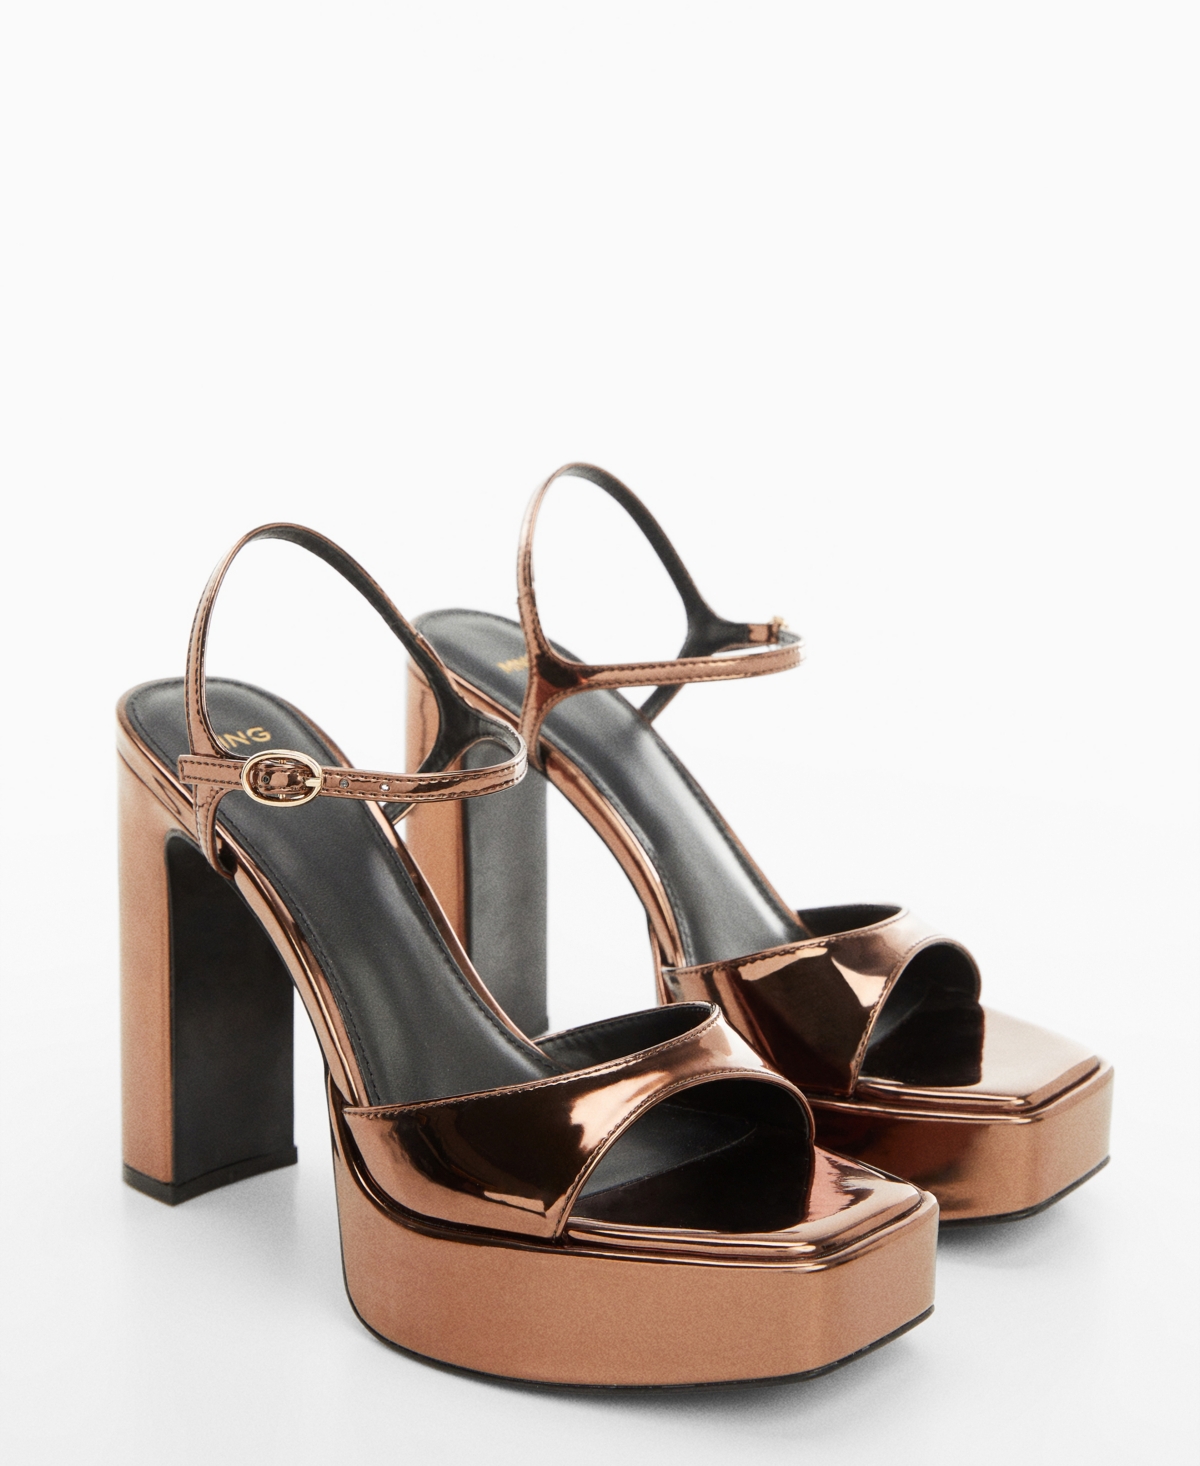 Women's Metallic Platform Sandals - Copper